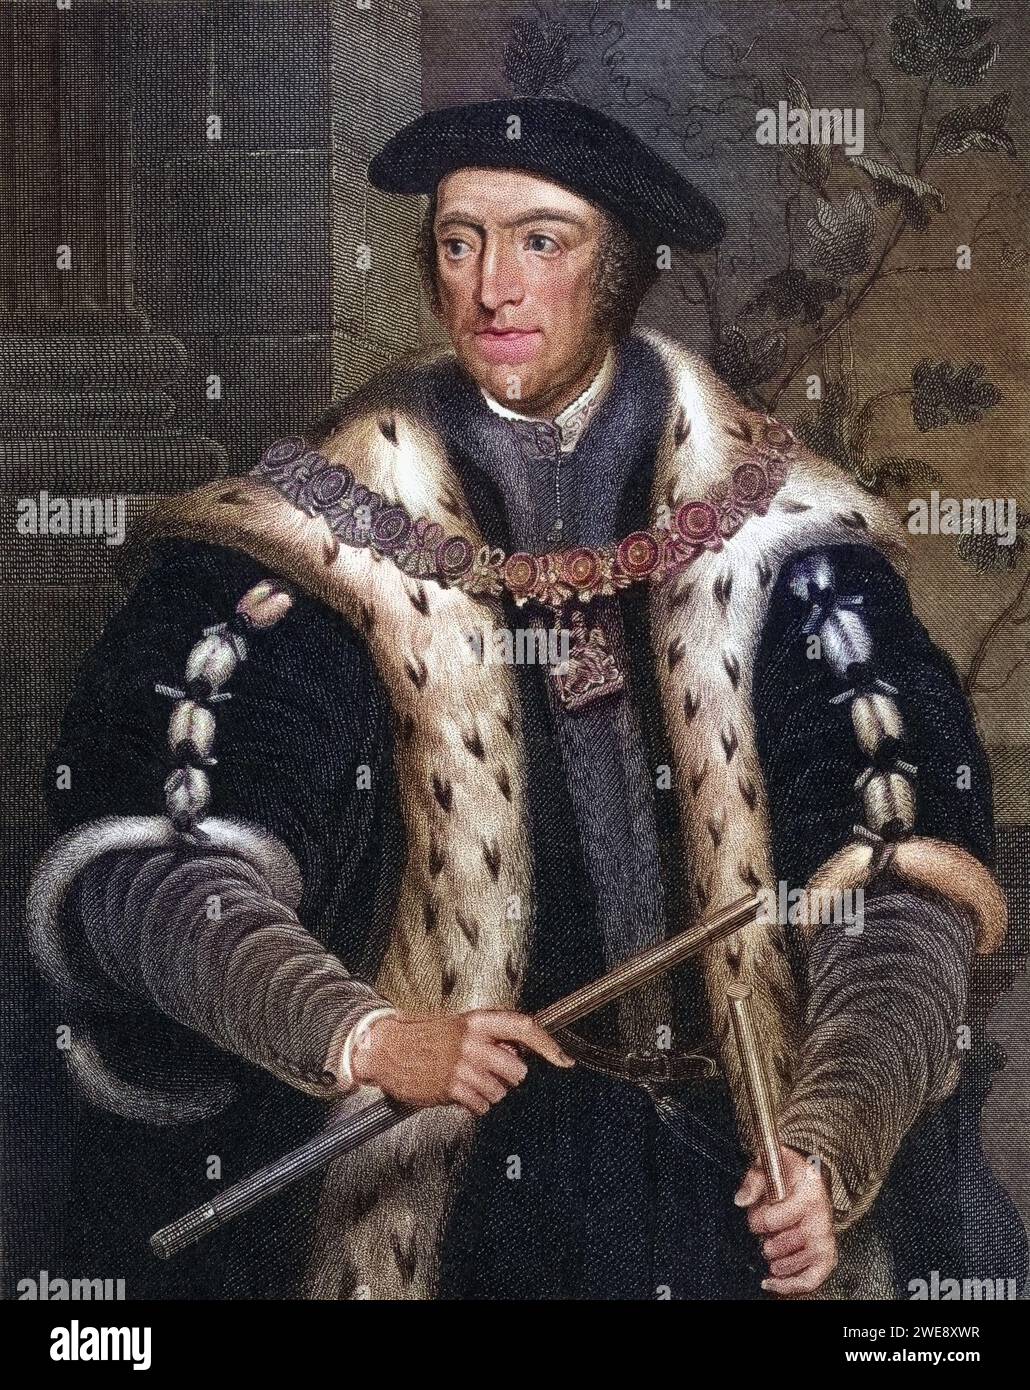 Thomas Howard, 3. Herzog von Norfolk, Graf von Surrey, Graf Marschall, 1473-1554 englischer Tudor-Politiker, der unter Heinrich VIII hohe Ämter bekleidet. Aus Lodges British Portraits, veröffentlicht 1823. , Historisch, digital restaurierte Reproduktion von einer Vorlage aus dem 19. Jahrhundert, Datum nicht angegeben Stockfoto